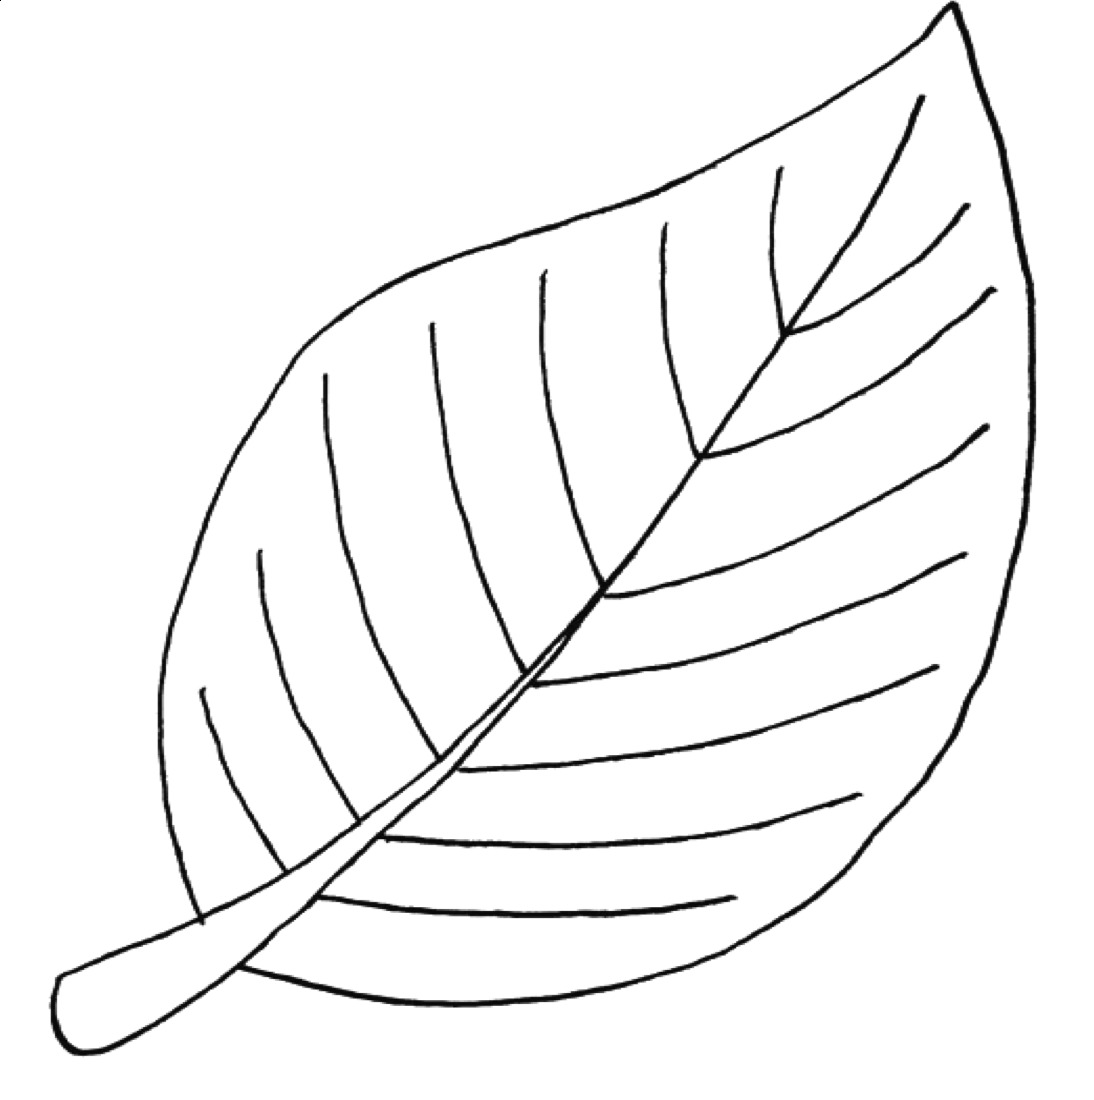 Раскраска лист фикуса